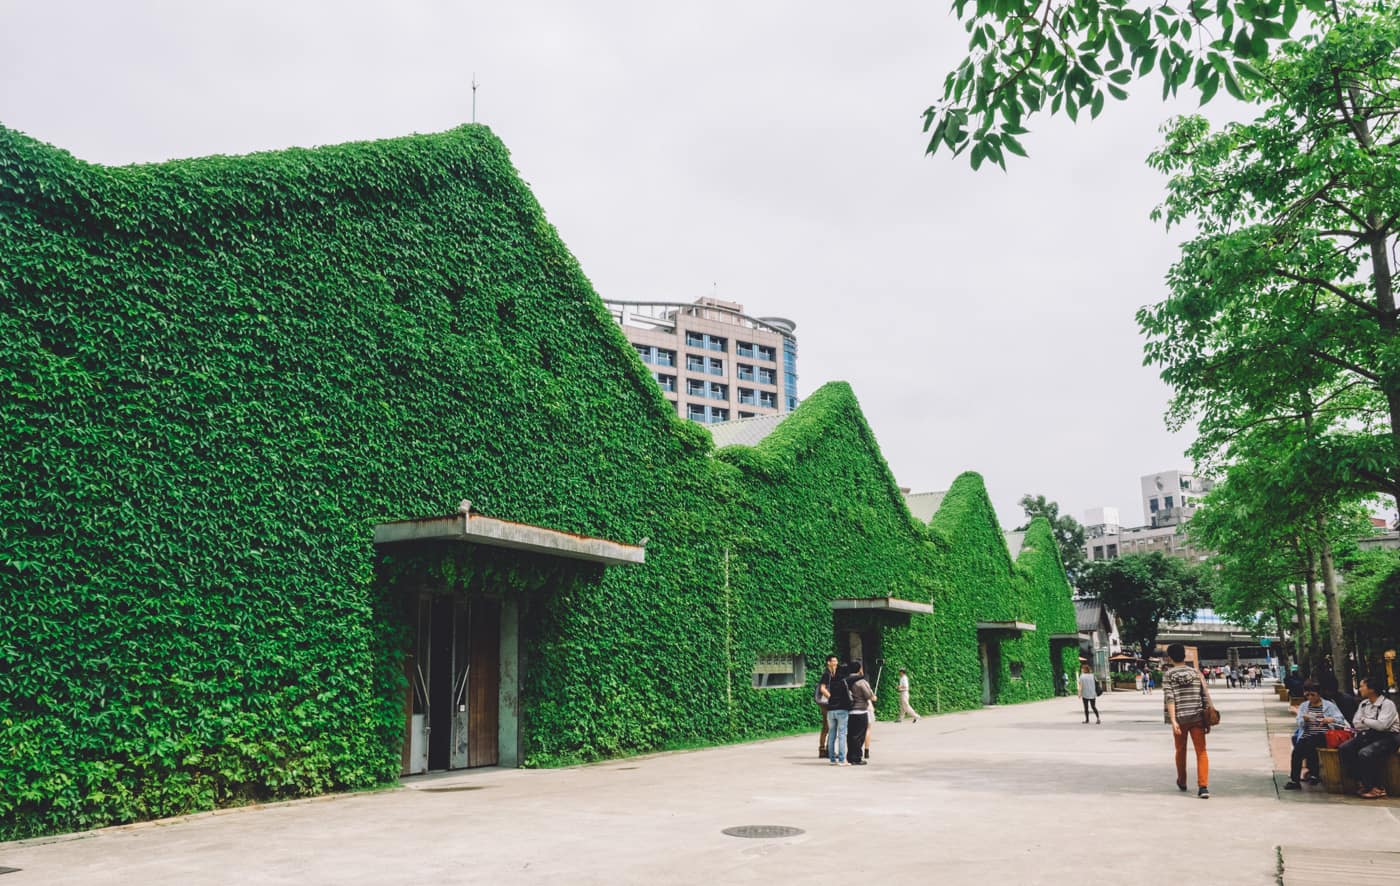 Taiwan - Huashan 1914 Creative Park - Green buildings